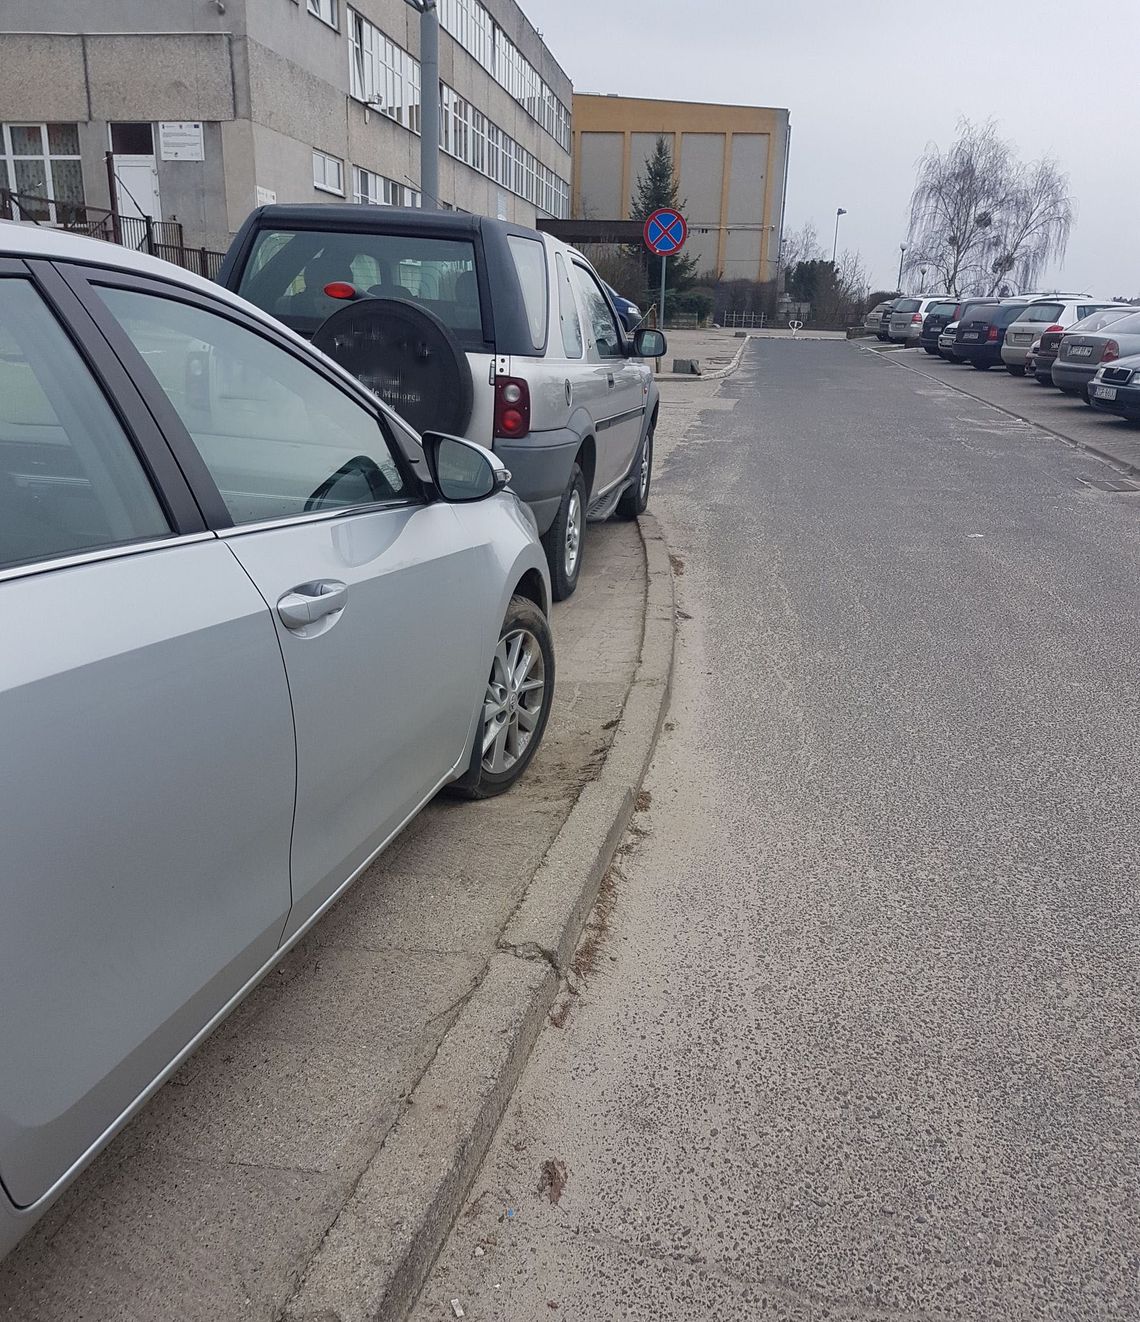 Mistrz parkowania niemal na każdym kroku - czytelnik przesyła zdjęcia